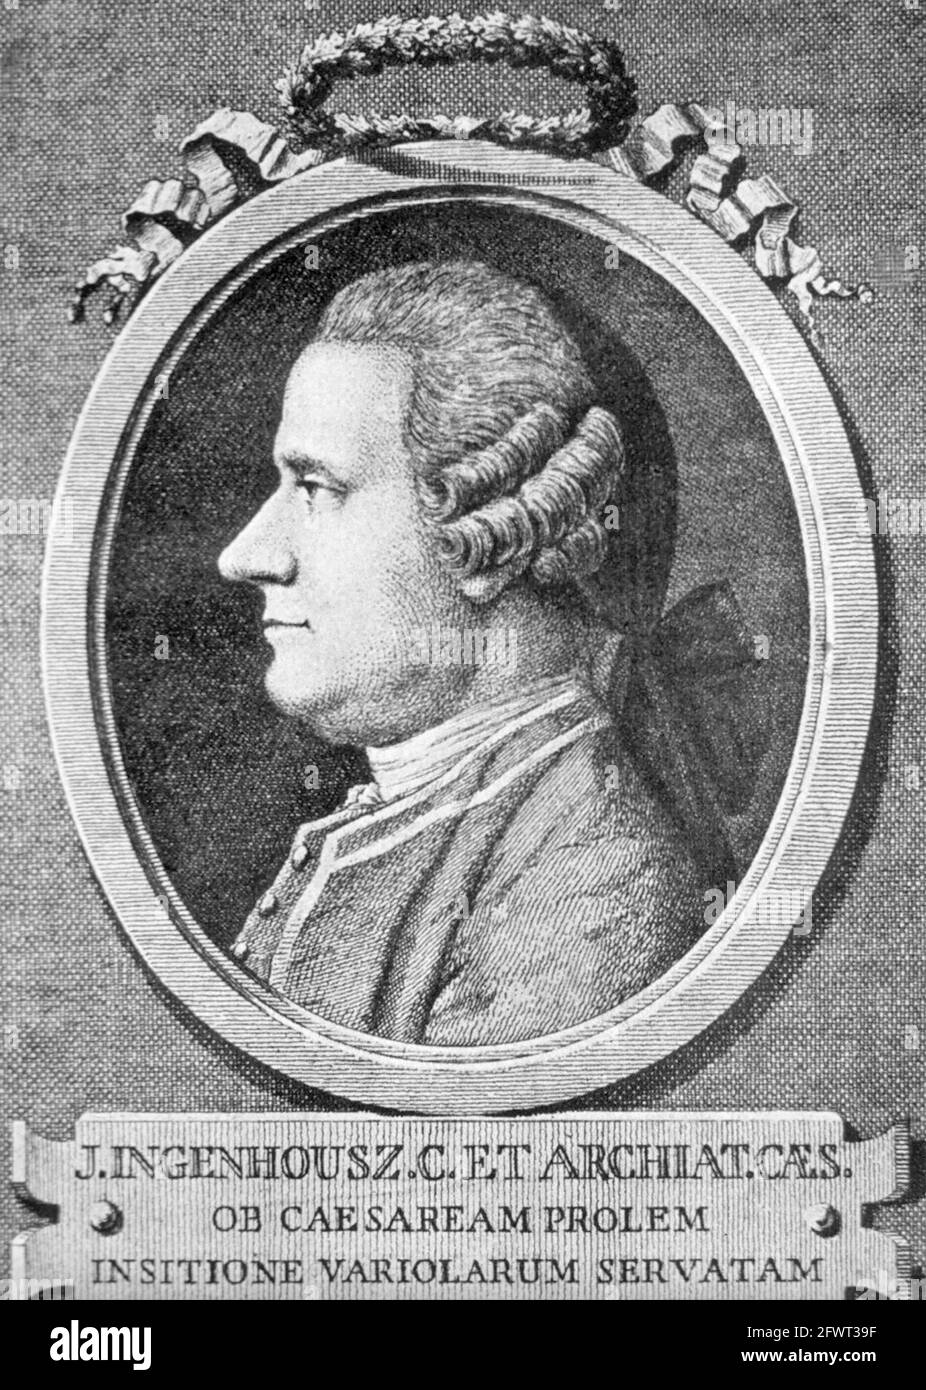 JAN INGENHOUSZ (1730-1799) niederländischer Chemiker, Biologe und Physiologe, der die Photosynthese entdeckte Stockfoto